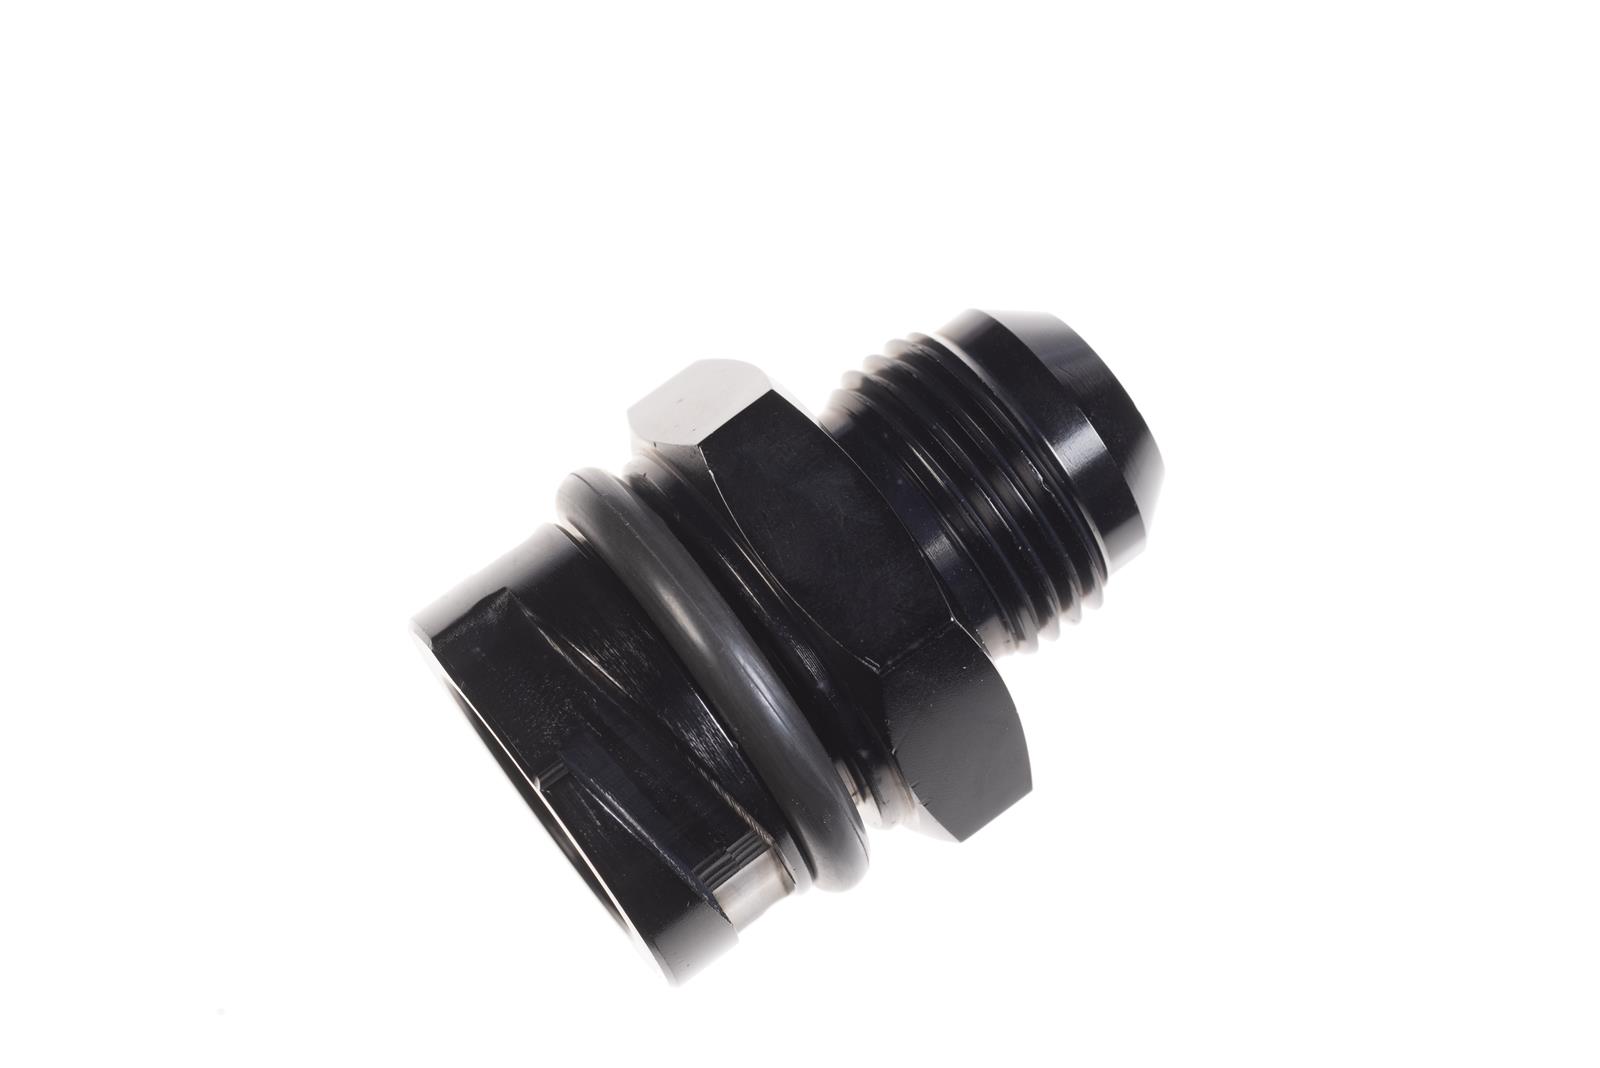 Redhorse -10 male valve Cover Oil cap aluminum, black